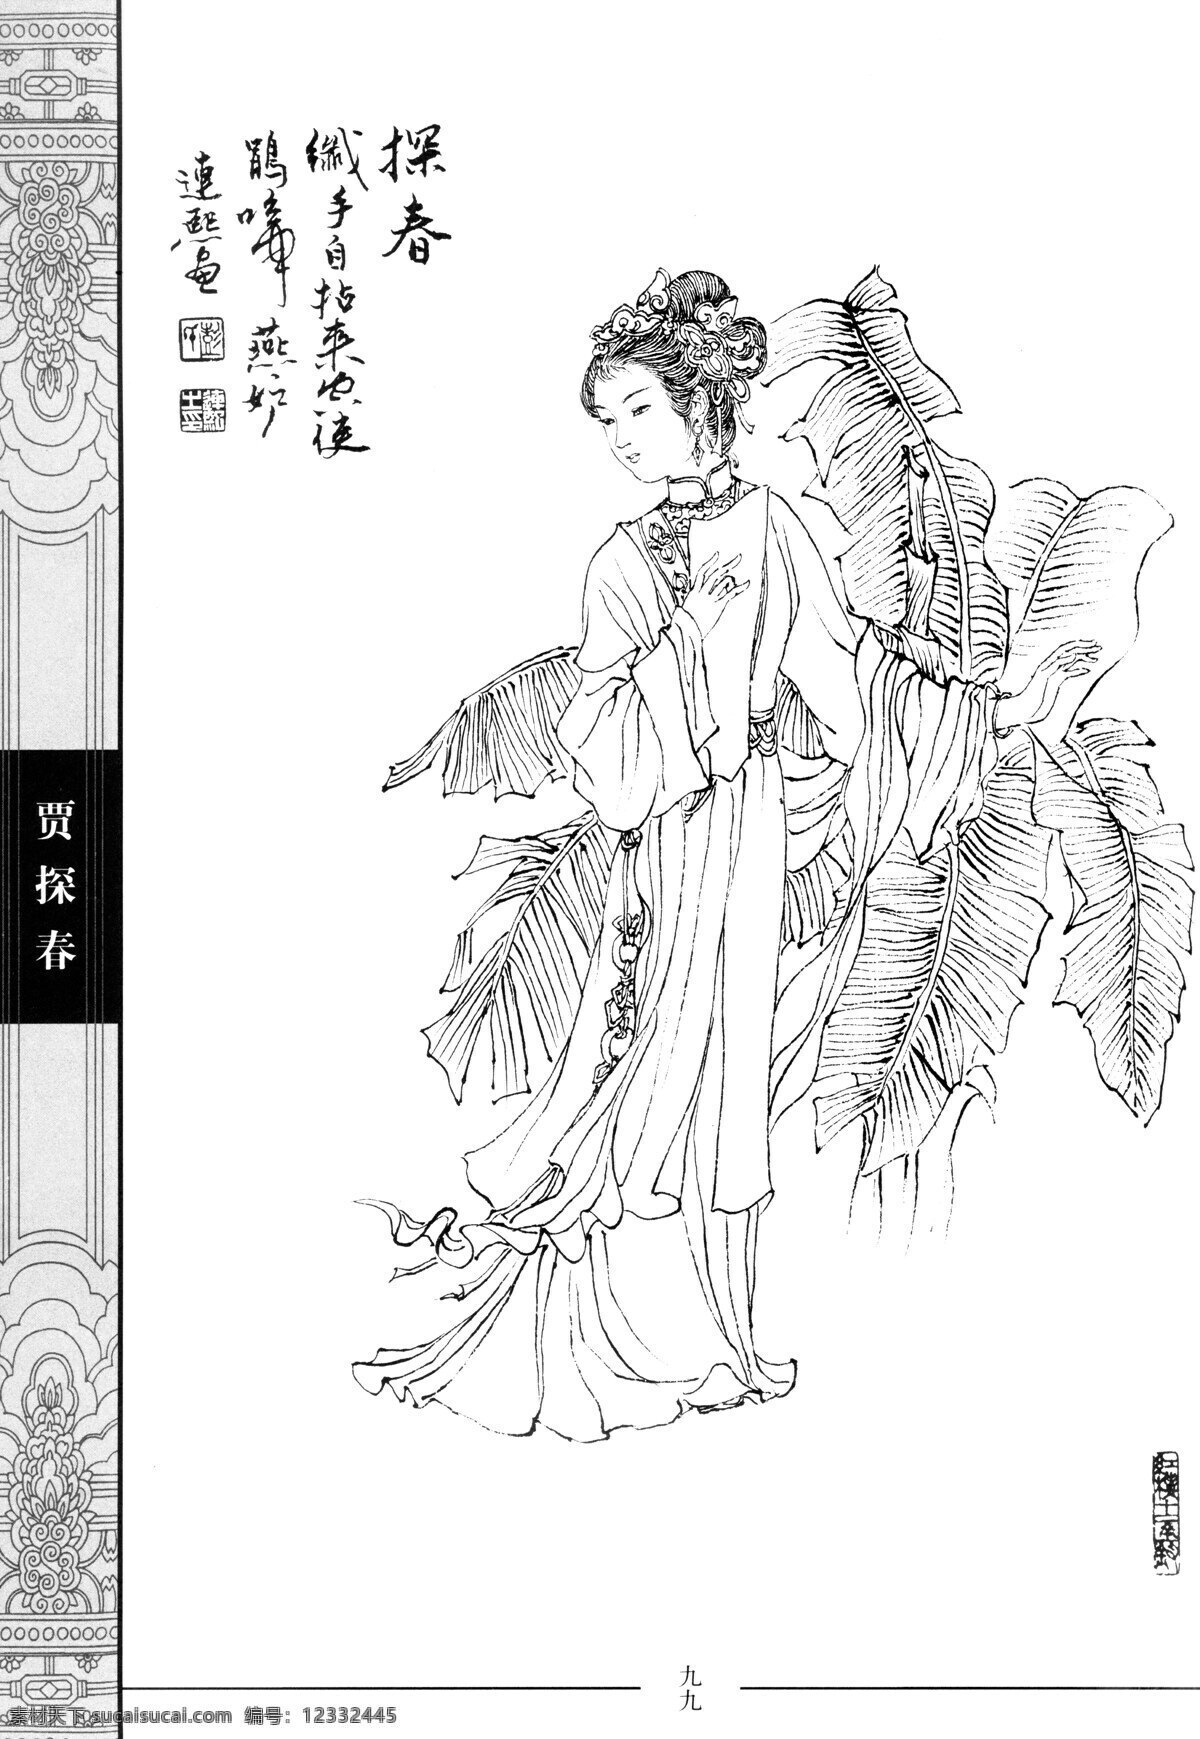 中国仕女百图 贾探春 仕女 彭连熙 线描 扫描 绘画书法 文化艺术